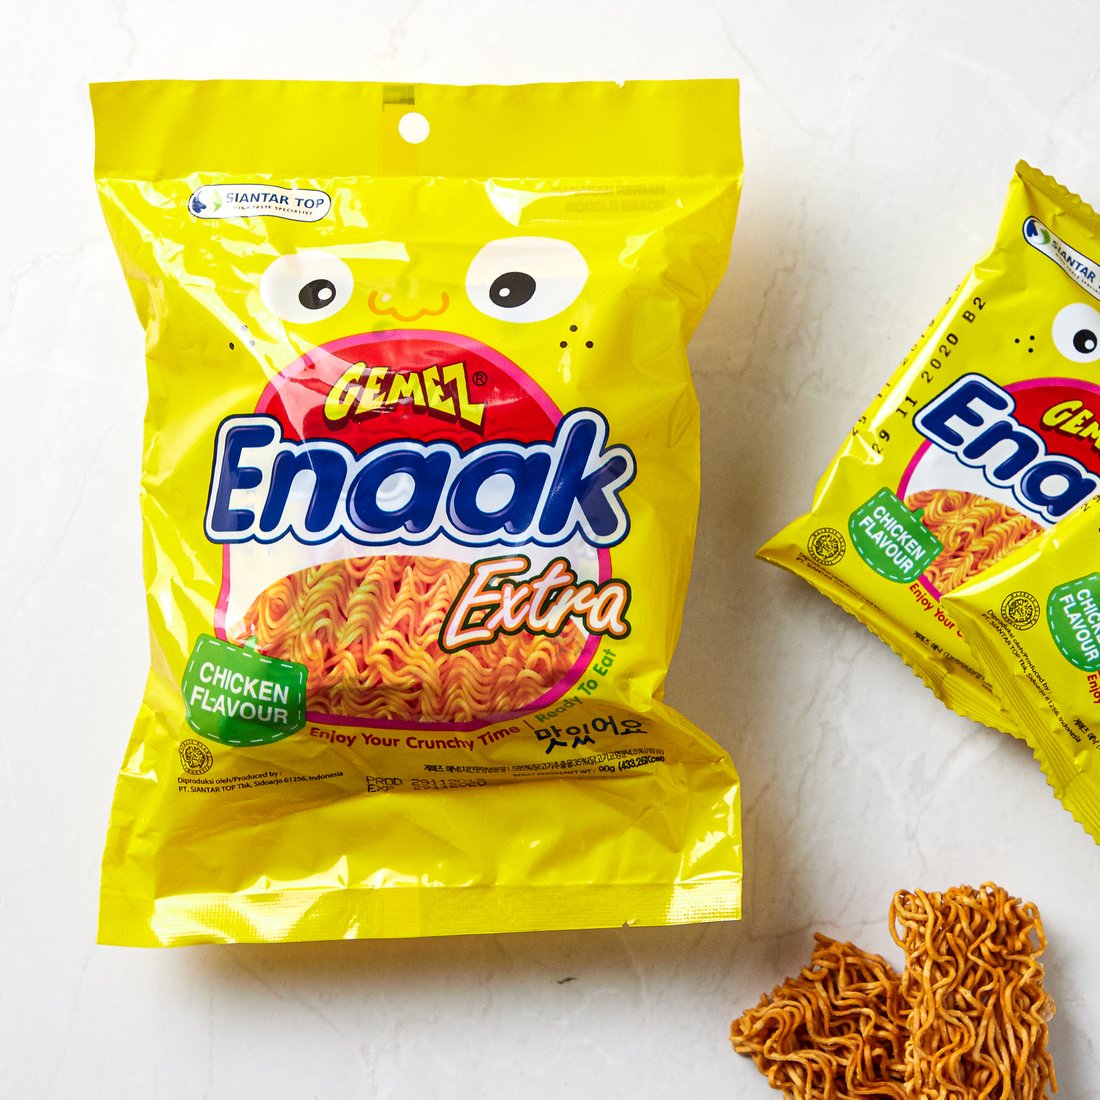 GEMEZ Enaak Noodle Snack / 게메즈 에낙 라면 과자